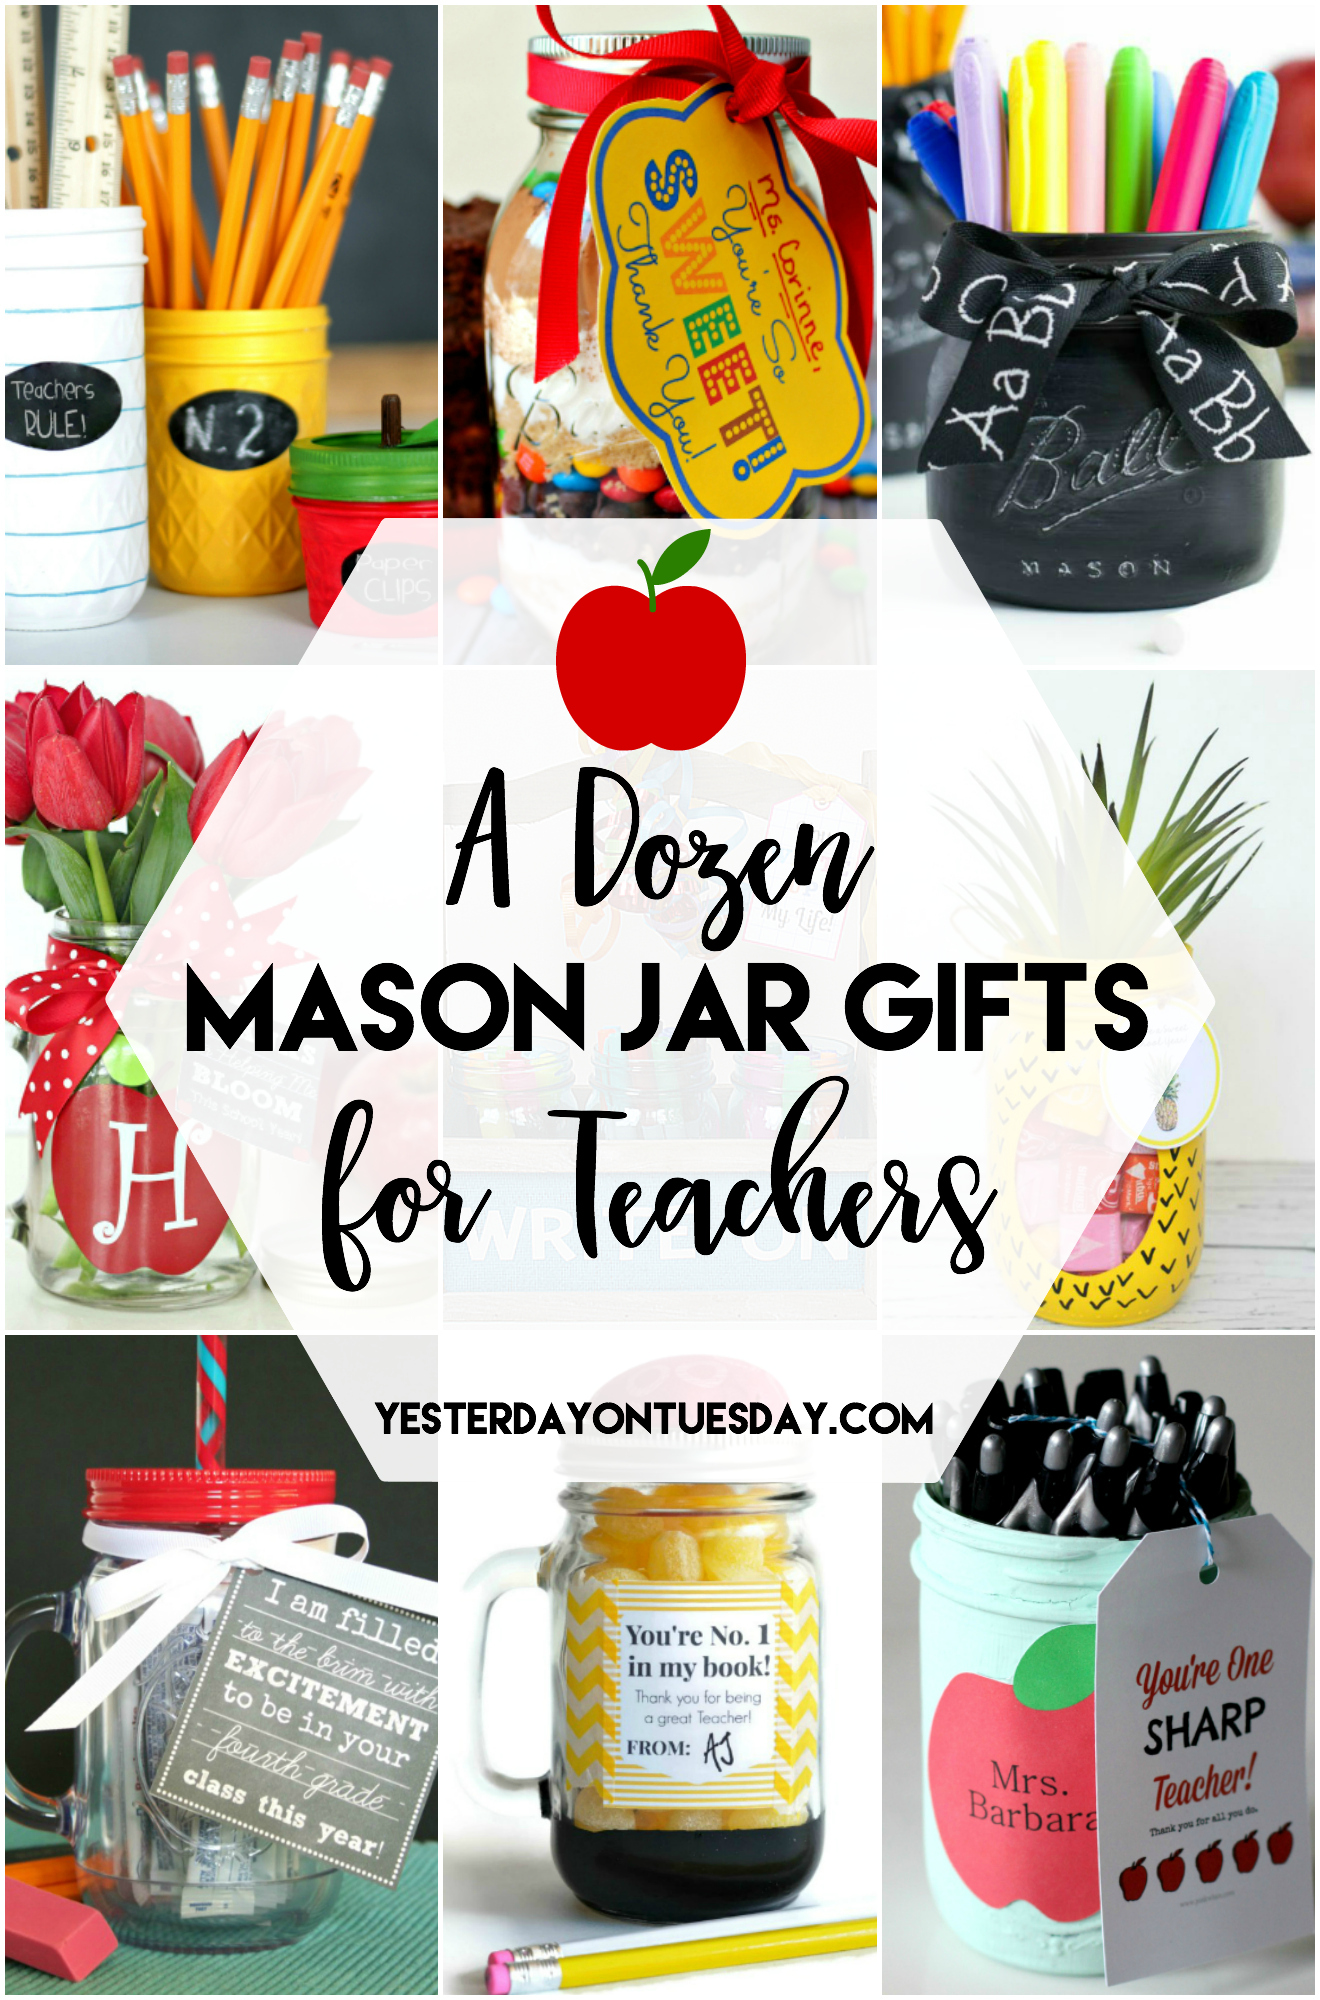 https://yesterdayontuesday.com/wp-content/uploads/2017/02/A-Dozen-Mason-Jar-Gifts-for-Teachers.jpg